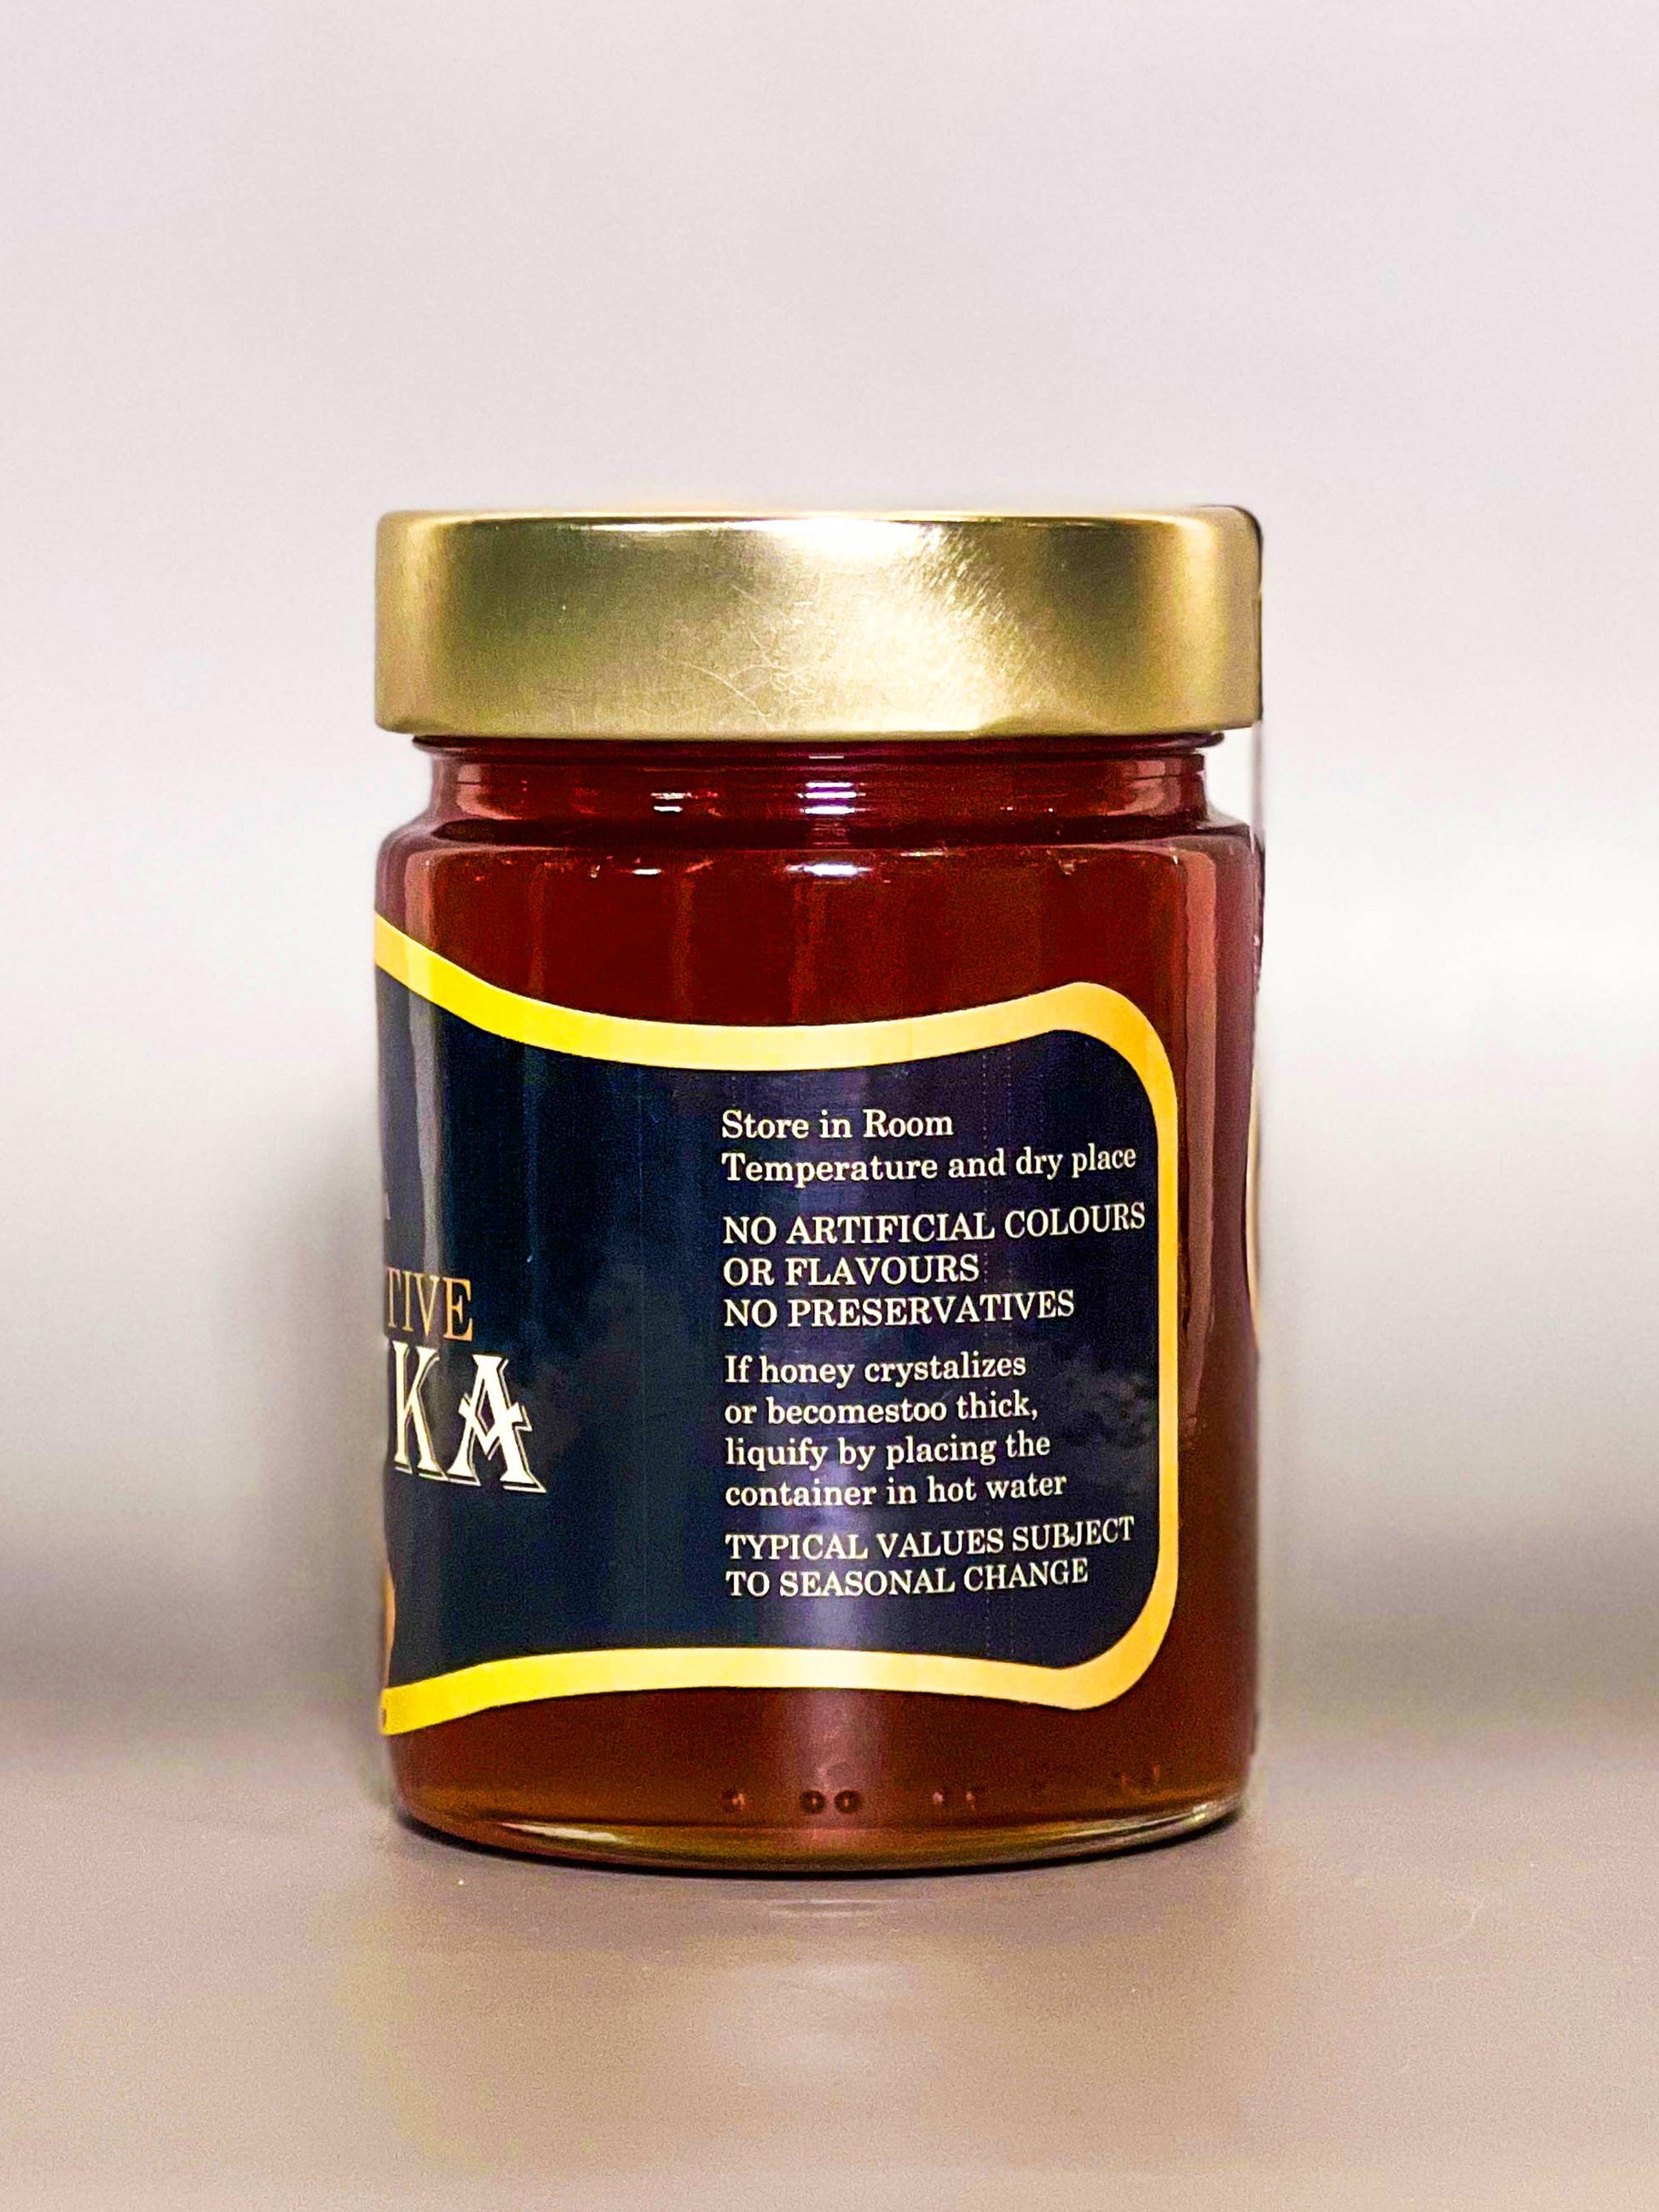 Manuka Honey - Amber Gold Honey